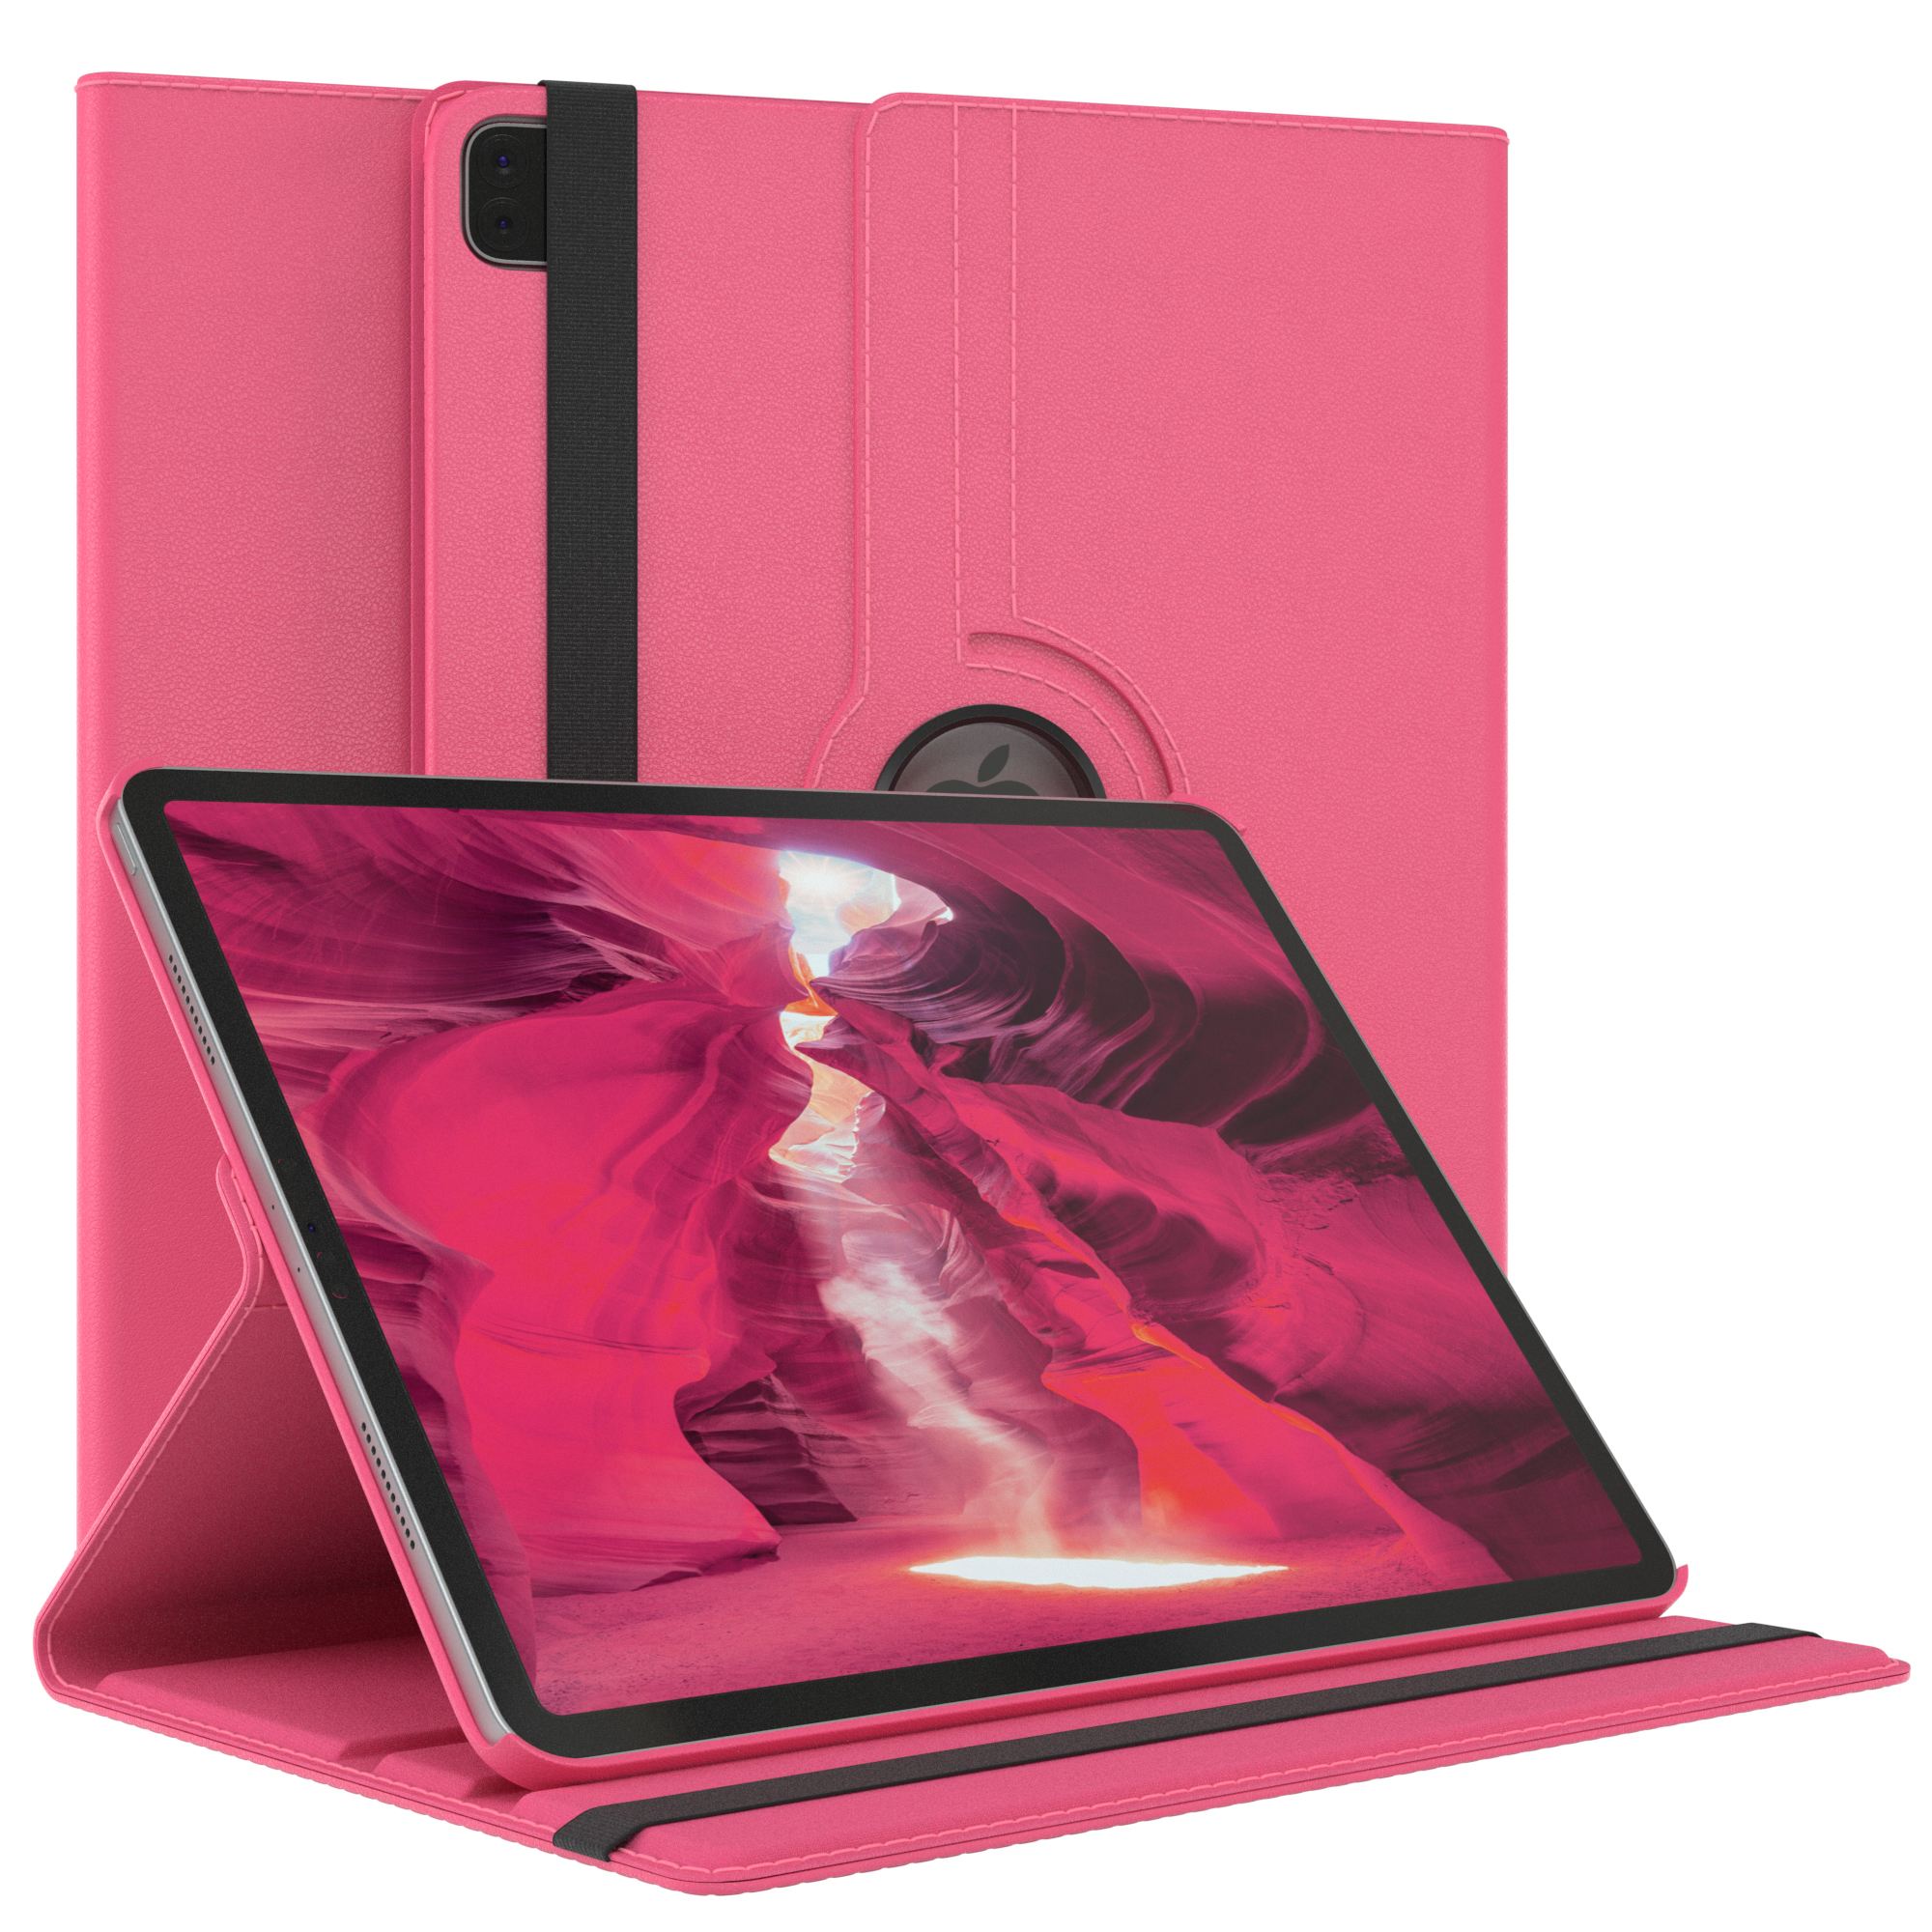 EAZY CASE Schutzhülle Rotationcase iPad Pro 12,9 Pink Tablethülle 2022 Apple 12.9\